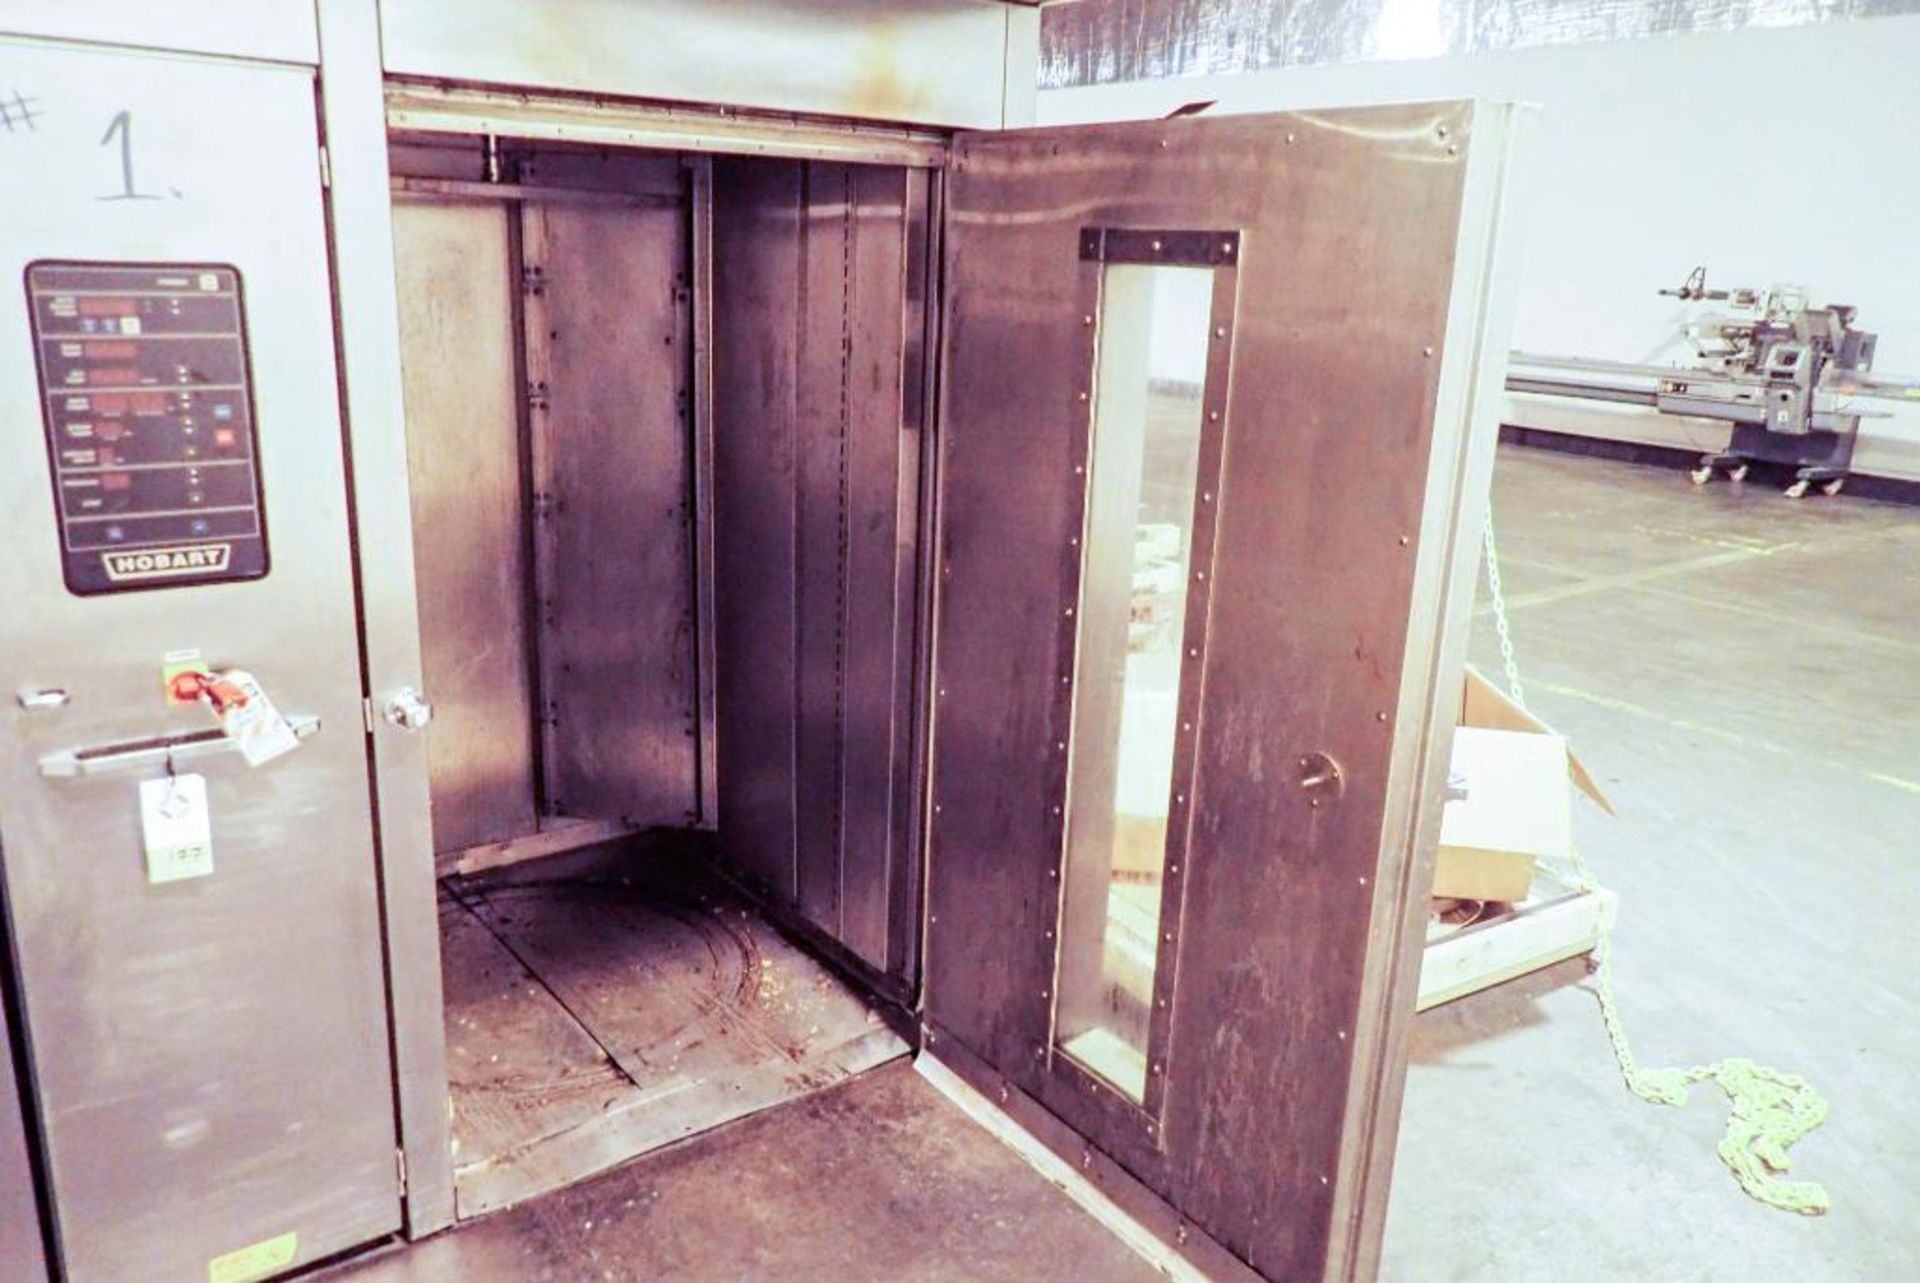 Hobart double rack oven - Image 3 of 16